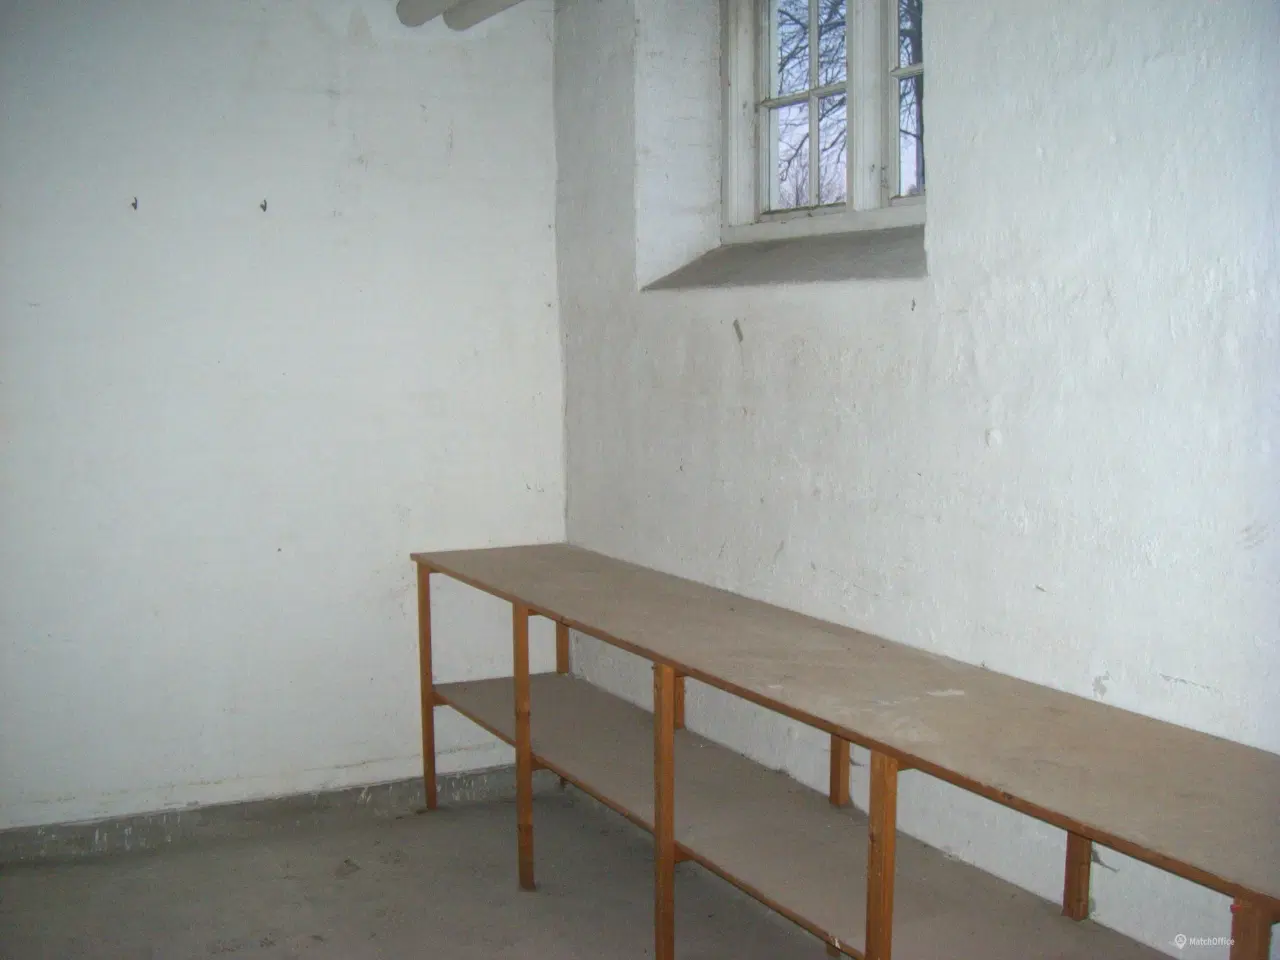 Billede 2 - Depotrum udlejes på den gamle Randers Kaserne